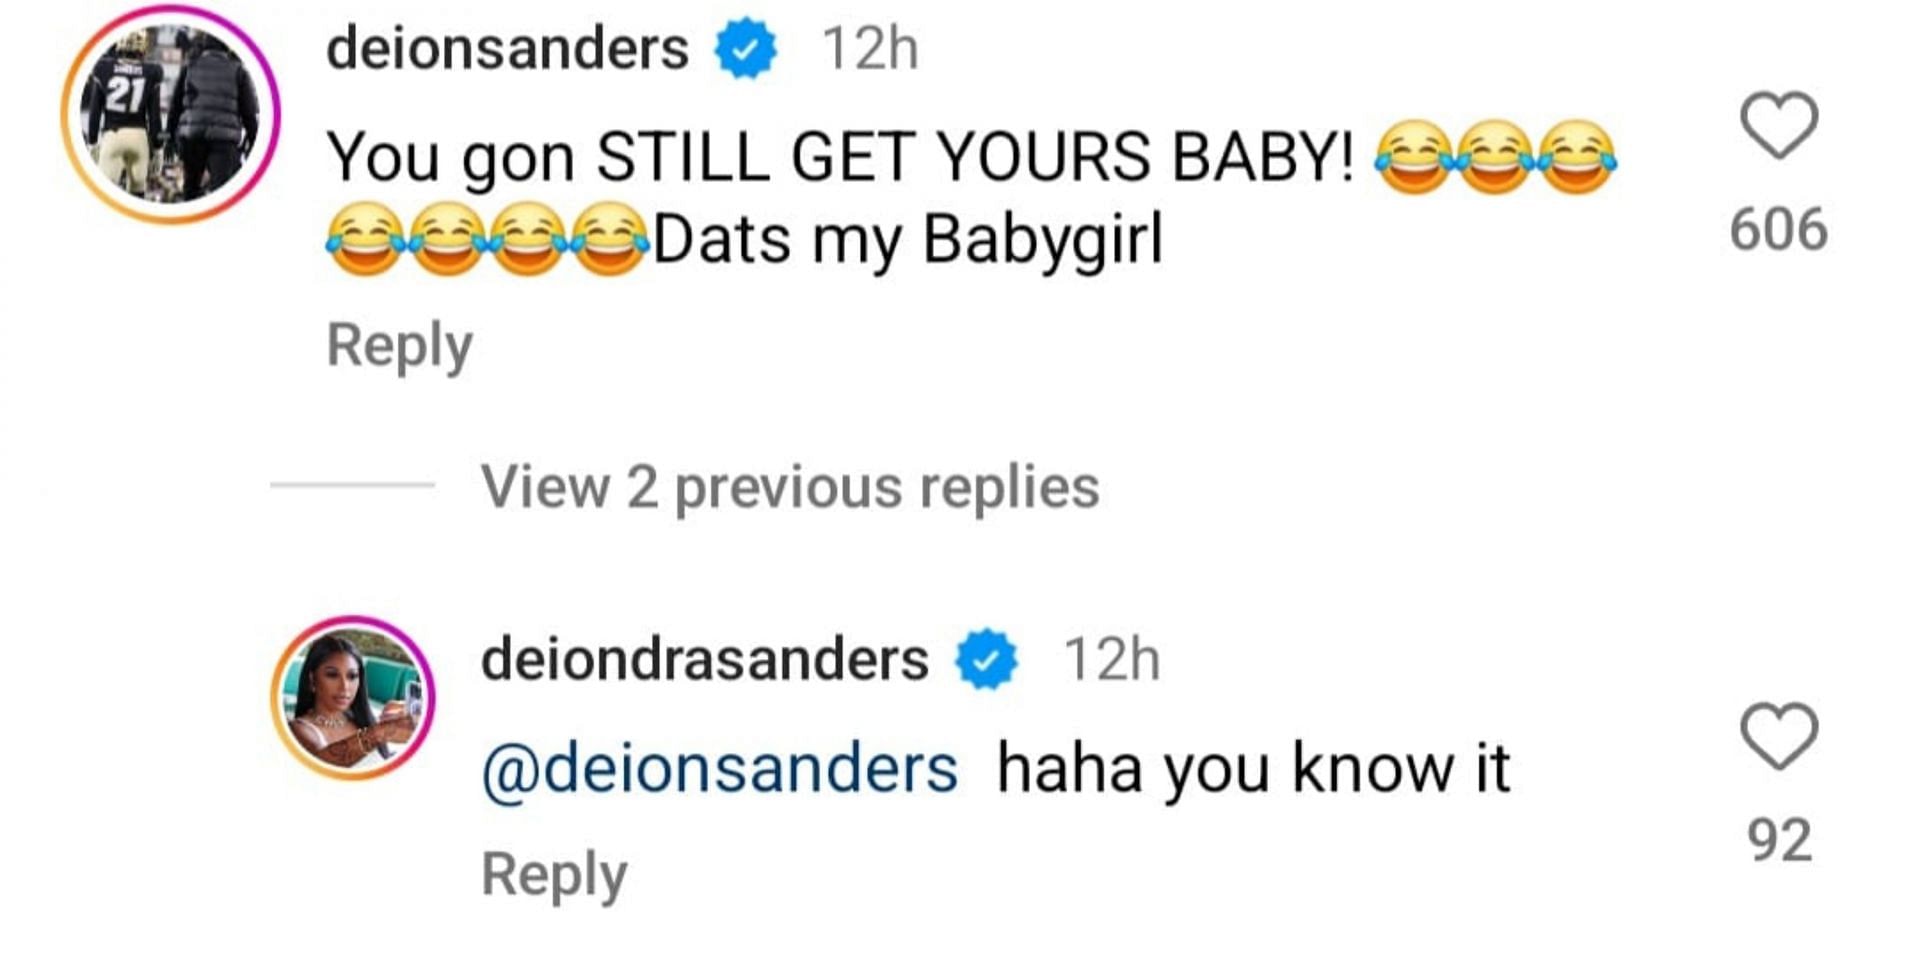 Deion Sanders had an adorable reaction.